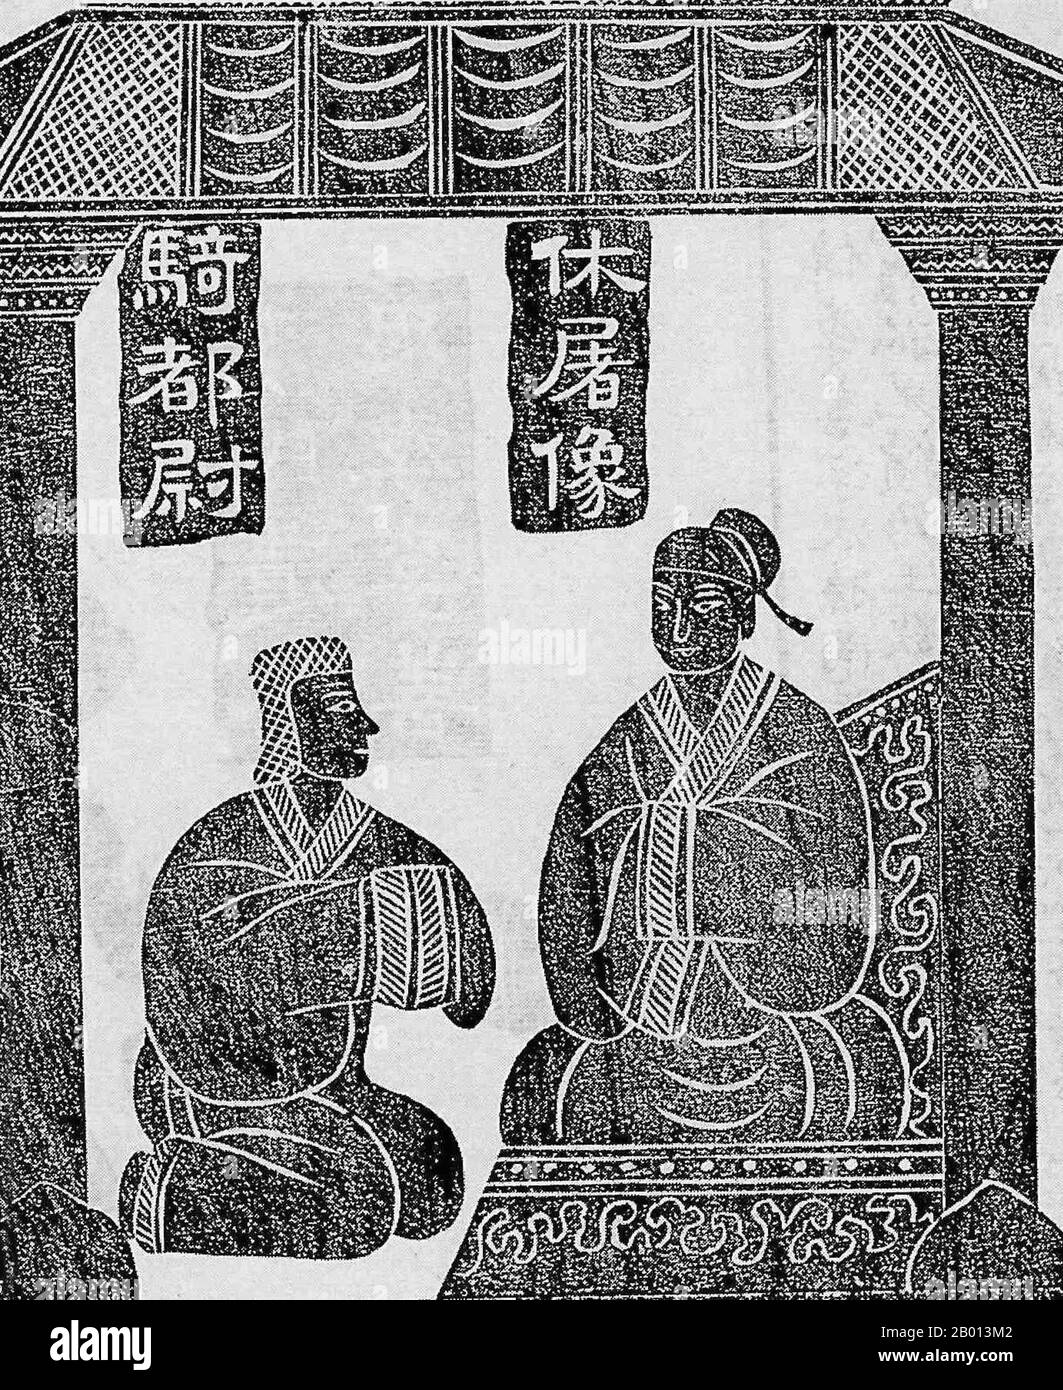 Cina: La storia di Jin Midi. WU Liang Santuario, Jiaxiang, Shandong. II secolo d.C. Gli scarti di inchiostro derivati da rilievi scolpiti in pietra. Jin Midi (vissuto 134–86 a.C.) nacque un principe del nomade Xiongnu, una confederazione di tribù dell'Asia centrale che un tempo dominava lo steppe eurasiatico orientale. Fu catturato dalle forze cinesi della dinastia Han e fece uno schiavo che tendeva i cavalli nelle scuderie imperiali. Tuttavia, ottenne la fiducia dell'Imperatore Wu quando scongeva un tentativo di assassinio contro di lui. Quando l'imperatore Wu stava morendo al suo capezzale, designò Jin Midi, Huo Guang e Shanguan Jie come reggenti. Foto Stock